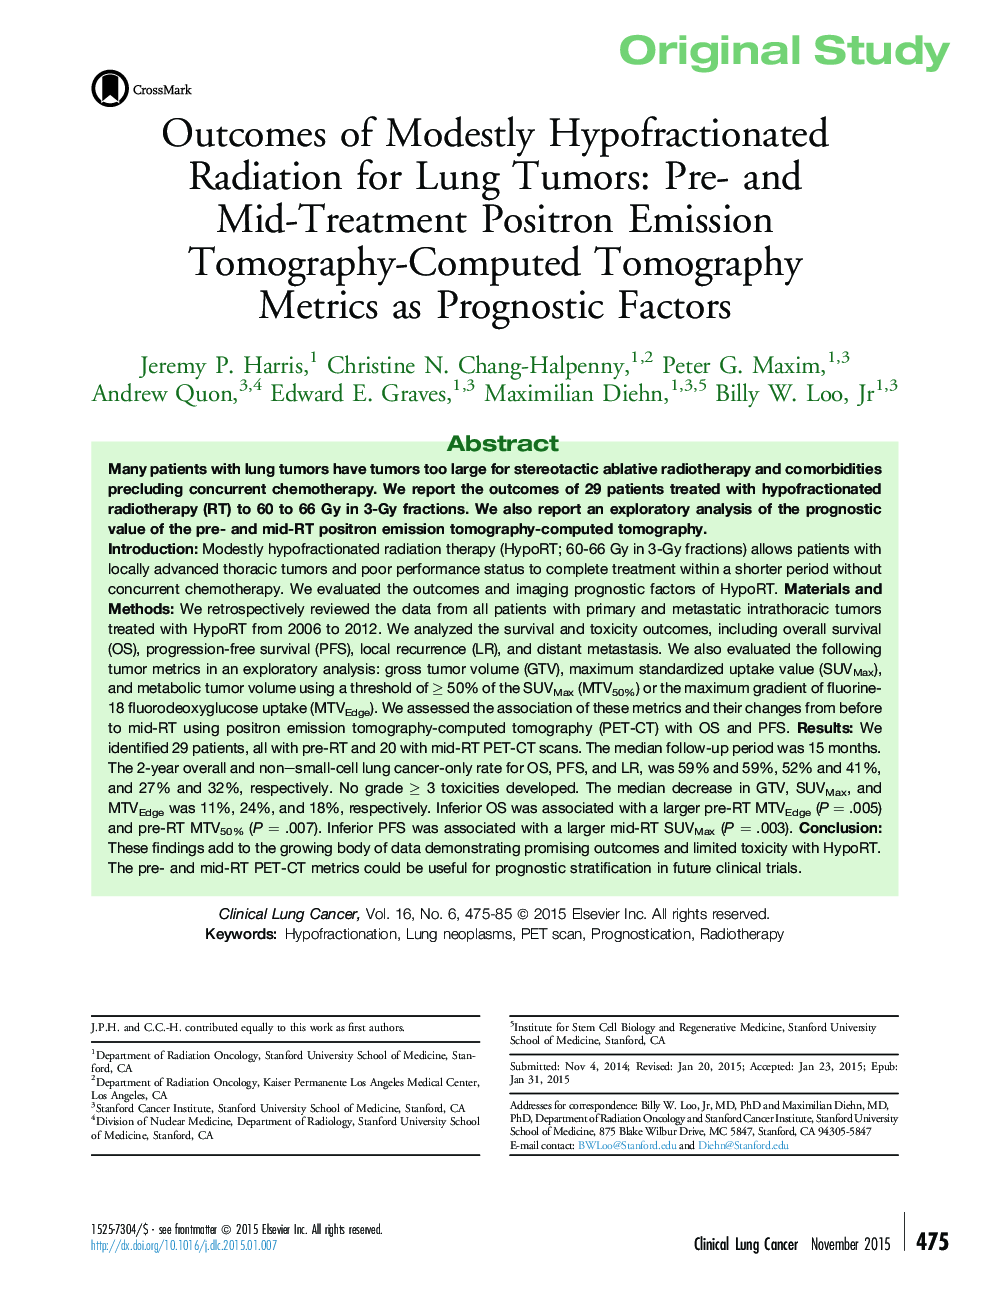 مطالعهی اصلی نتایج پرتوهای هیپوفراکشن شده برای تومورهای ریه: پیشآزمونهای پیشآگهی توموگرافی محاسبه توموگرافی انتشار توموگرافی پوزیترون و پیش وسط 